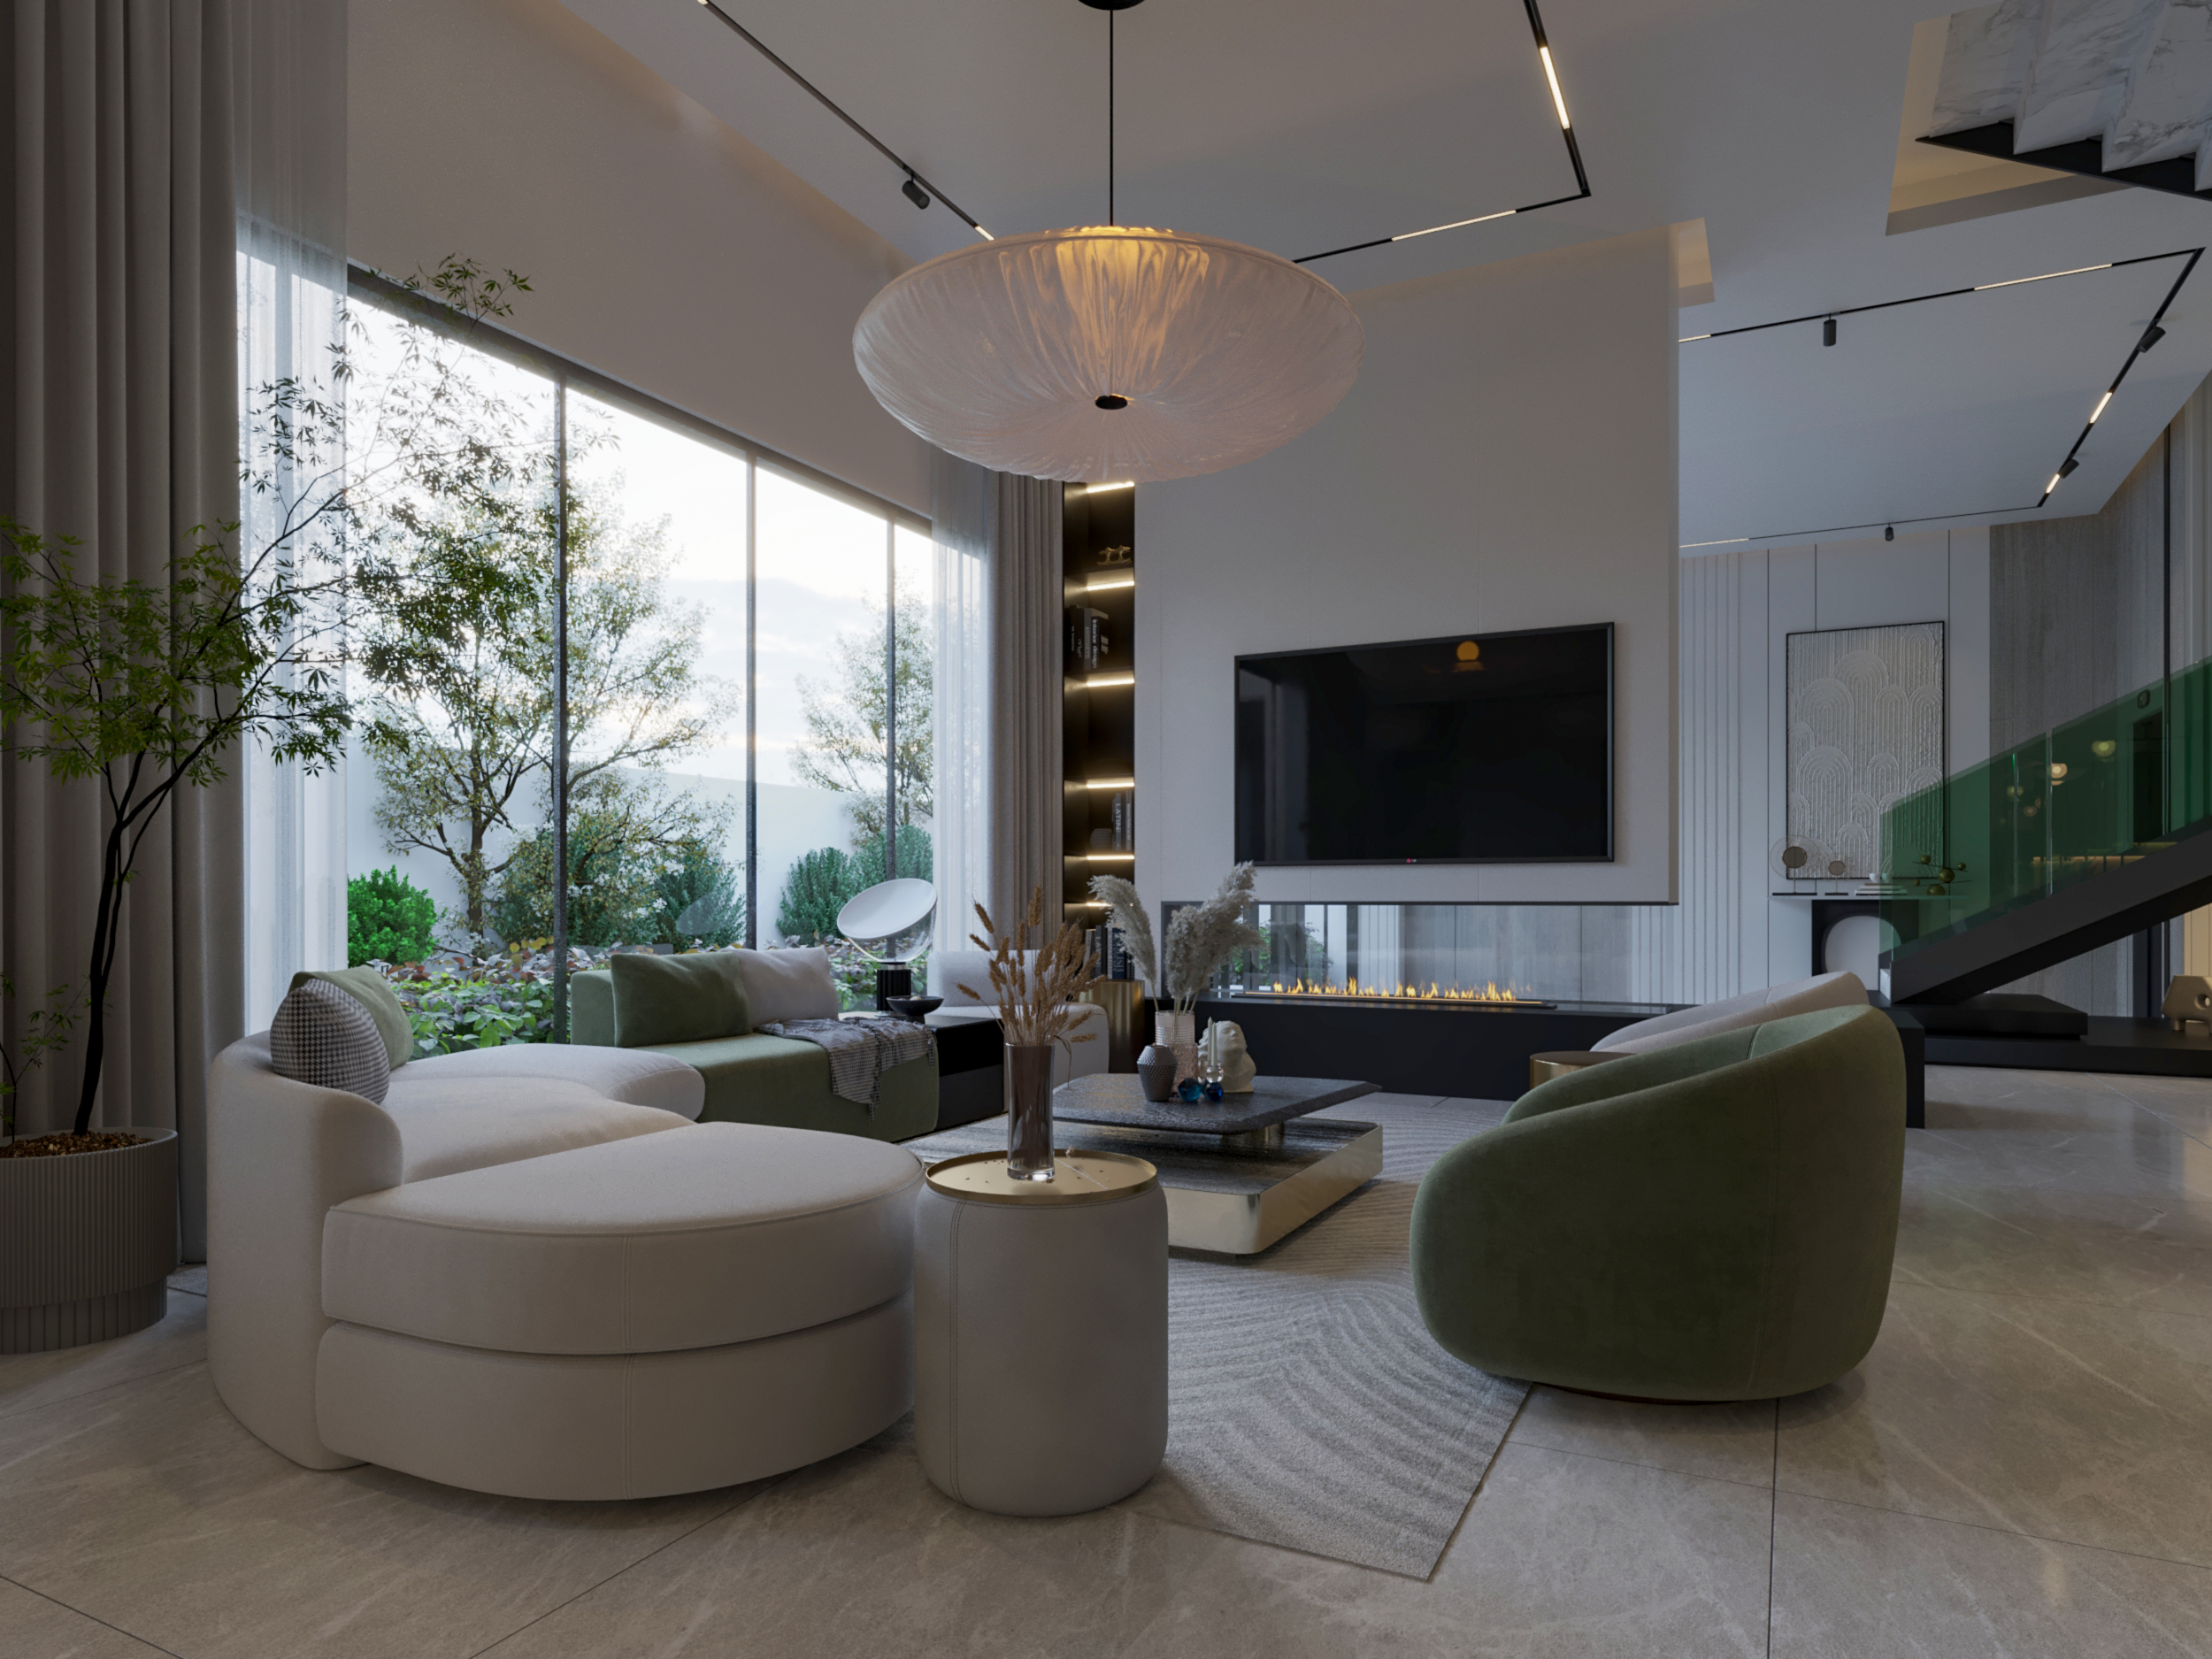 MODERN ELEGANT LIVING ROOM , tv unite - sofa - sun light- design 